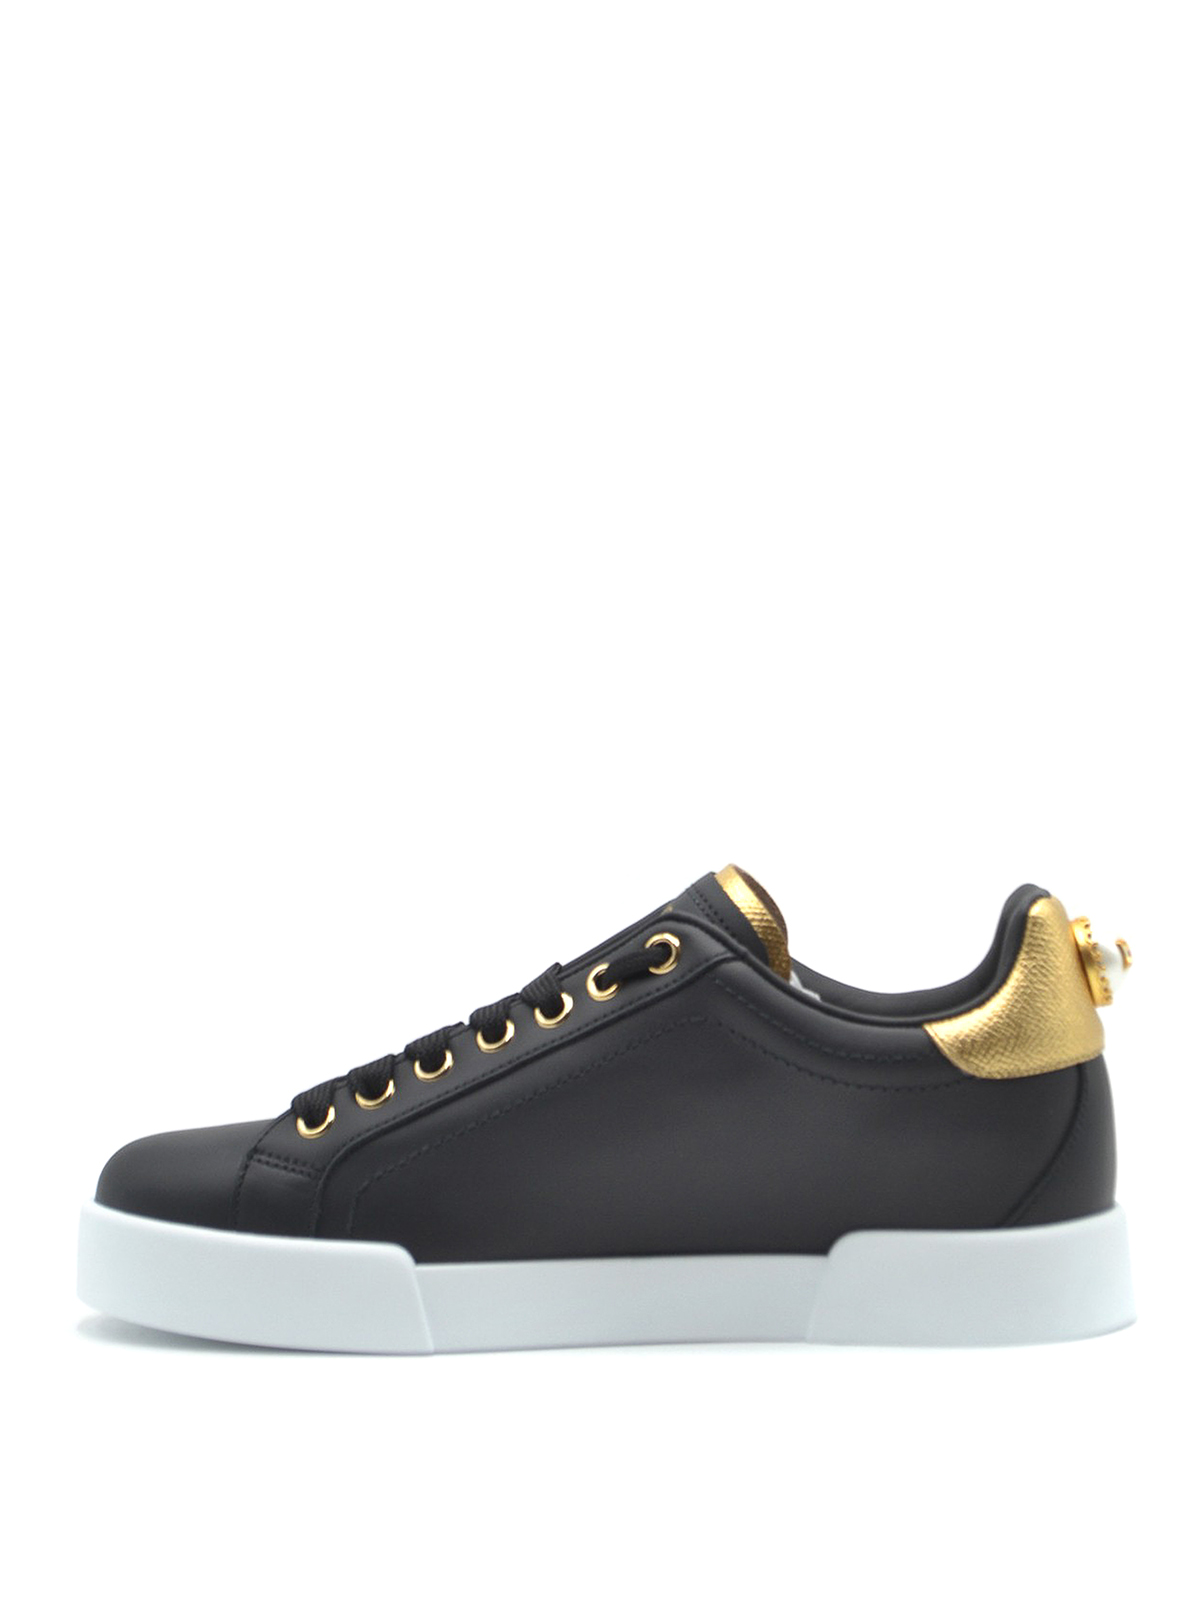 Trainers Dolce & Gabbana - Portofino maxi pearl black leather sneakers ...